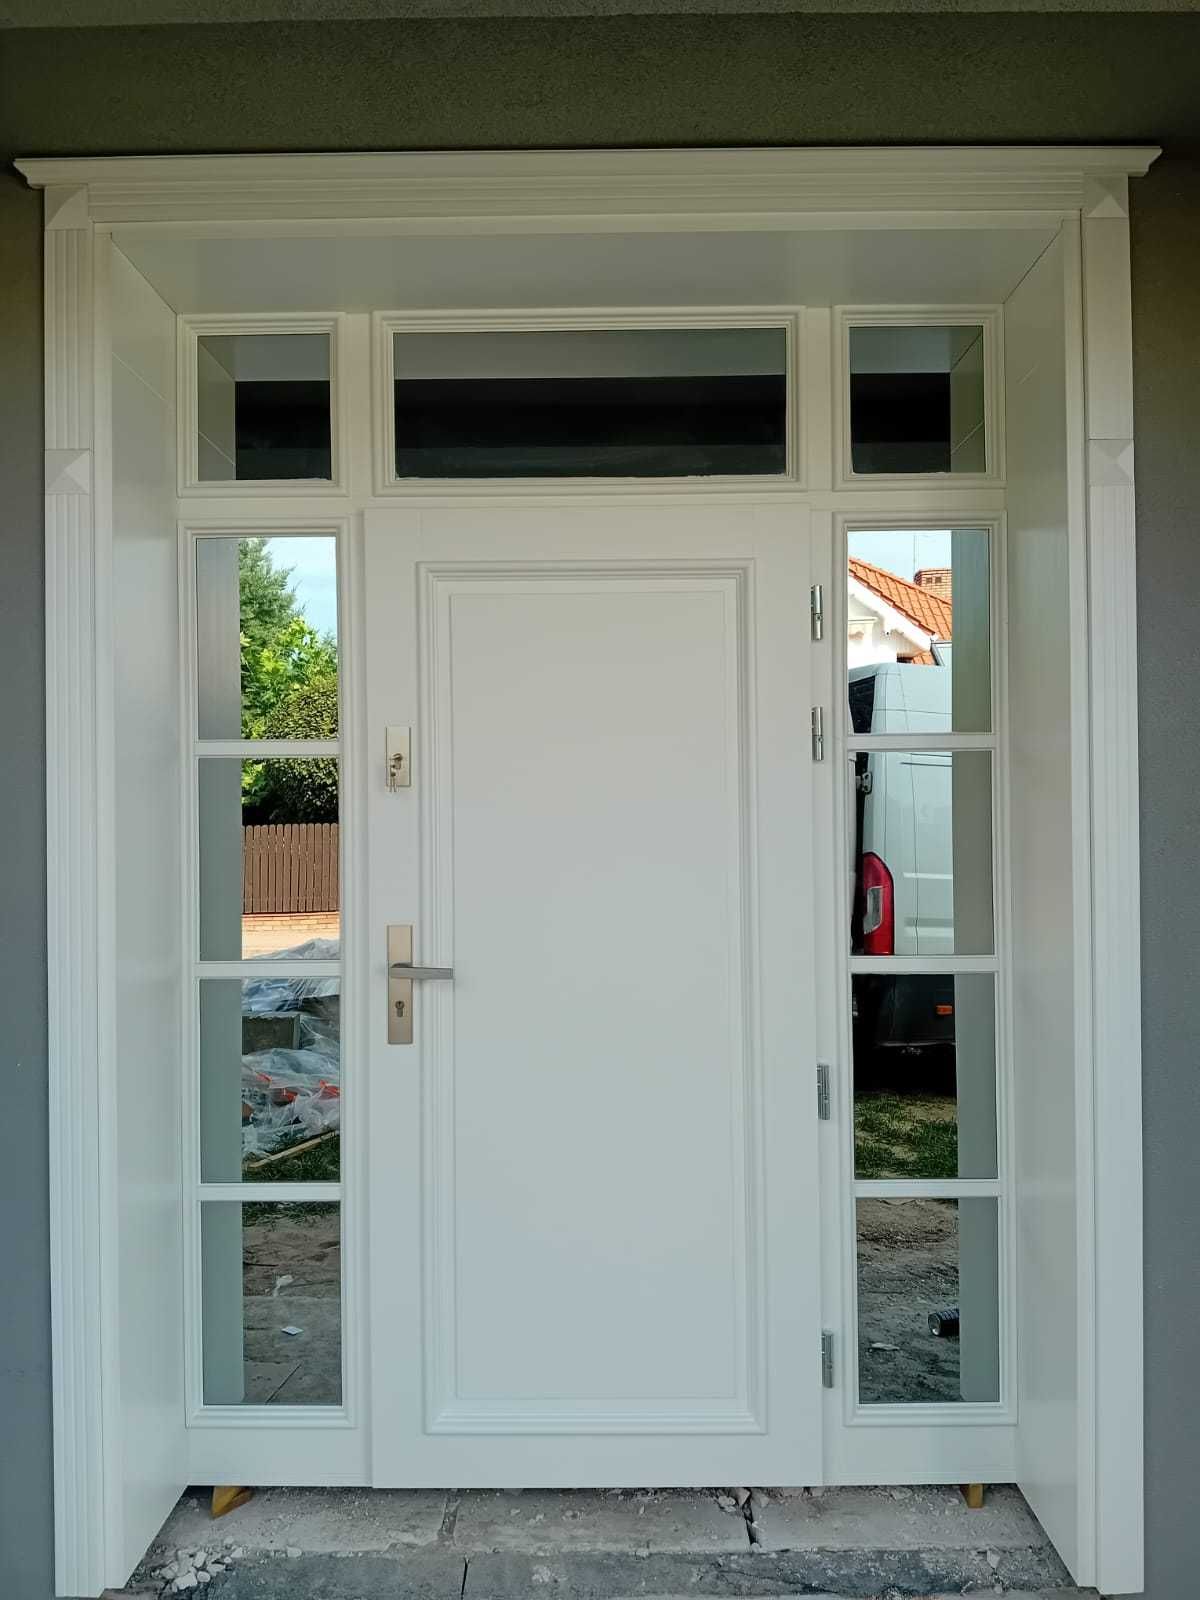 Drzwi wejściowe zewnętrzne  dębowe dostawa GRATIS CZYSTE POWIETRZE